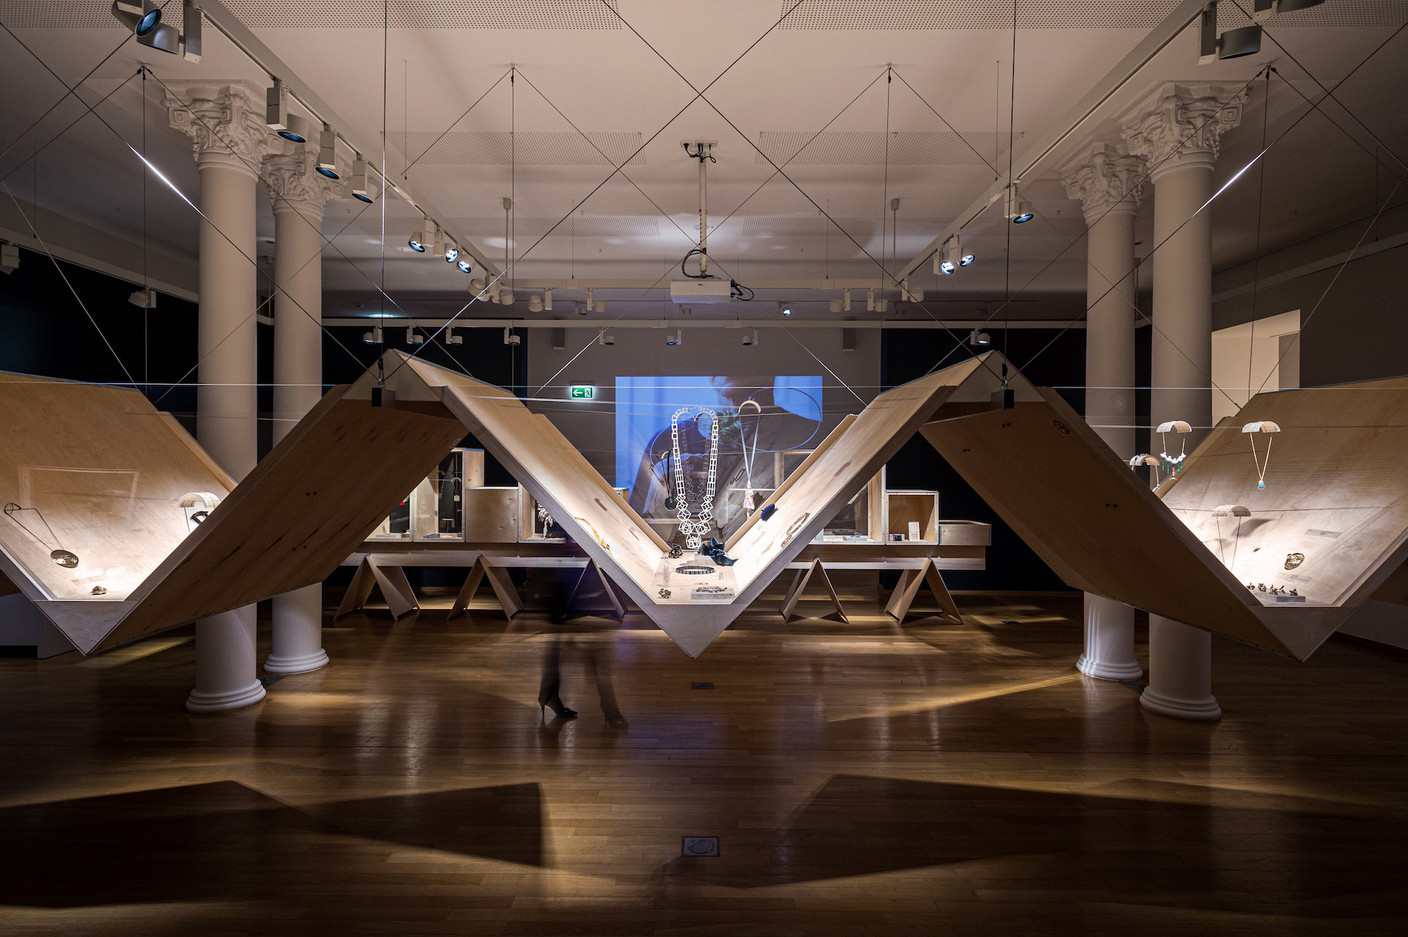 La structure suspendue crée un paysage à l’intérieur de la salle d’exposition. (Photo: Mike Zenari)